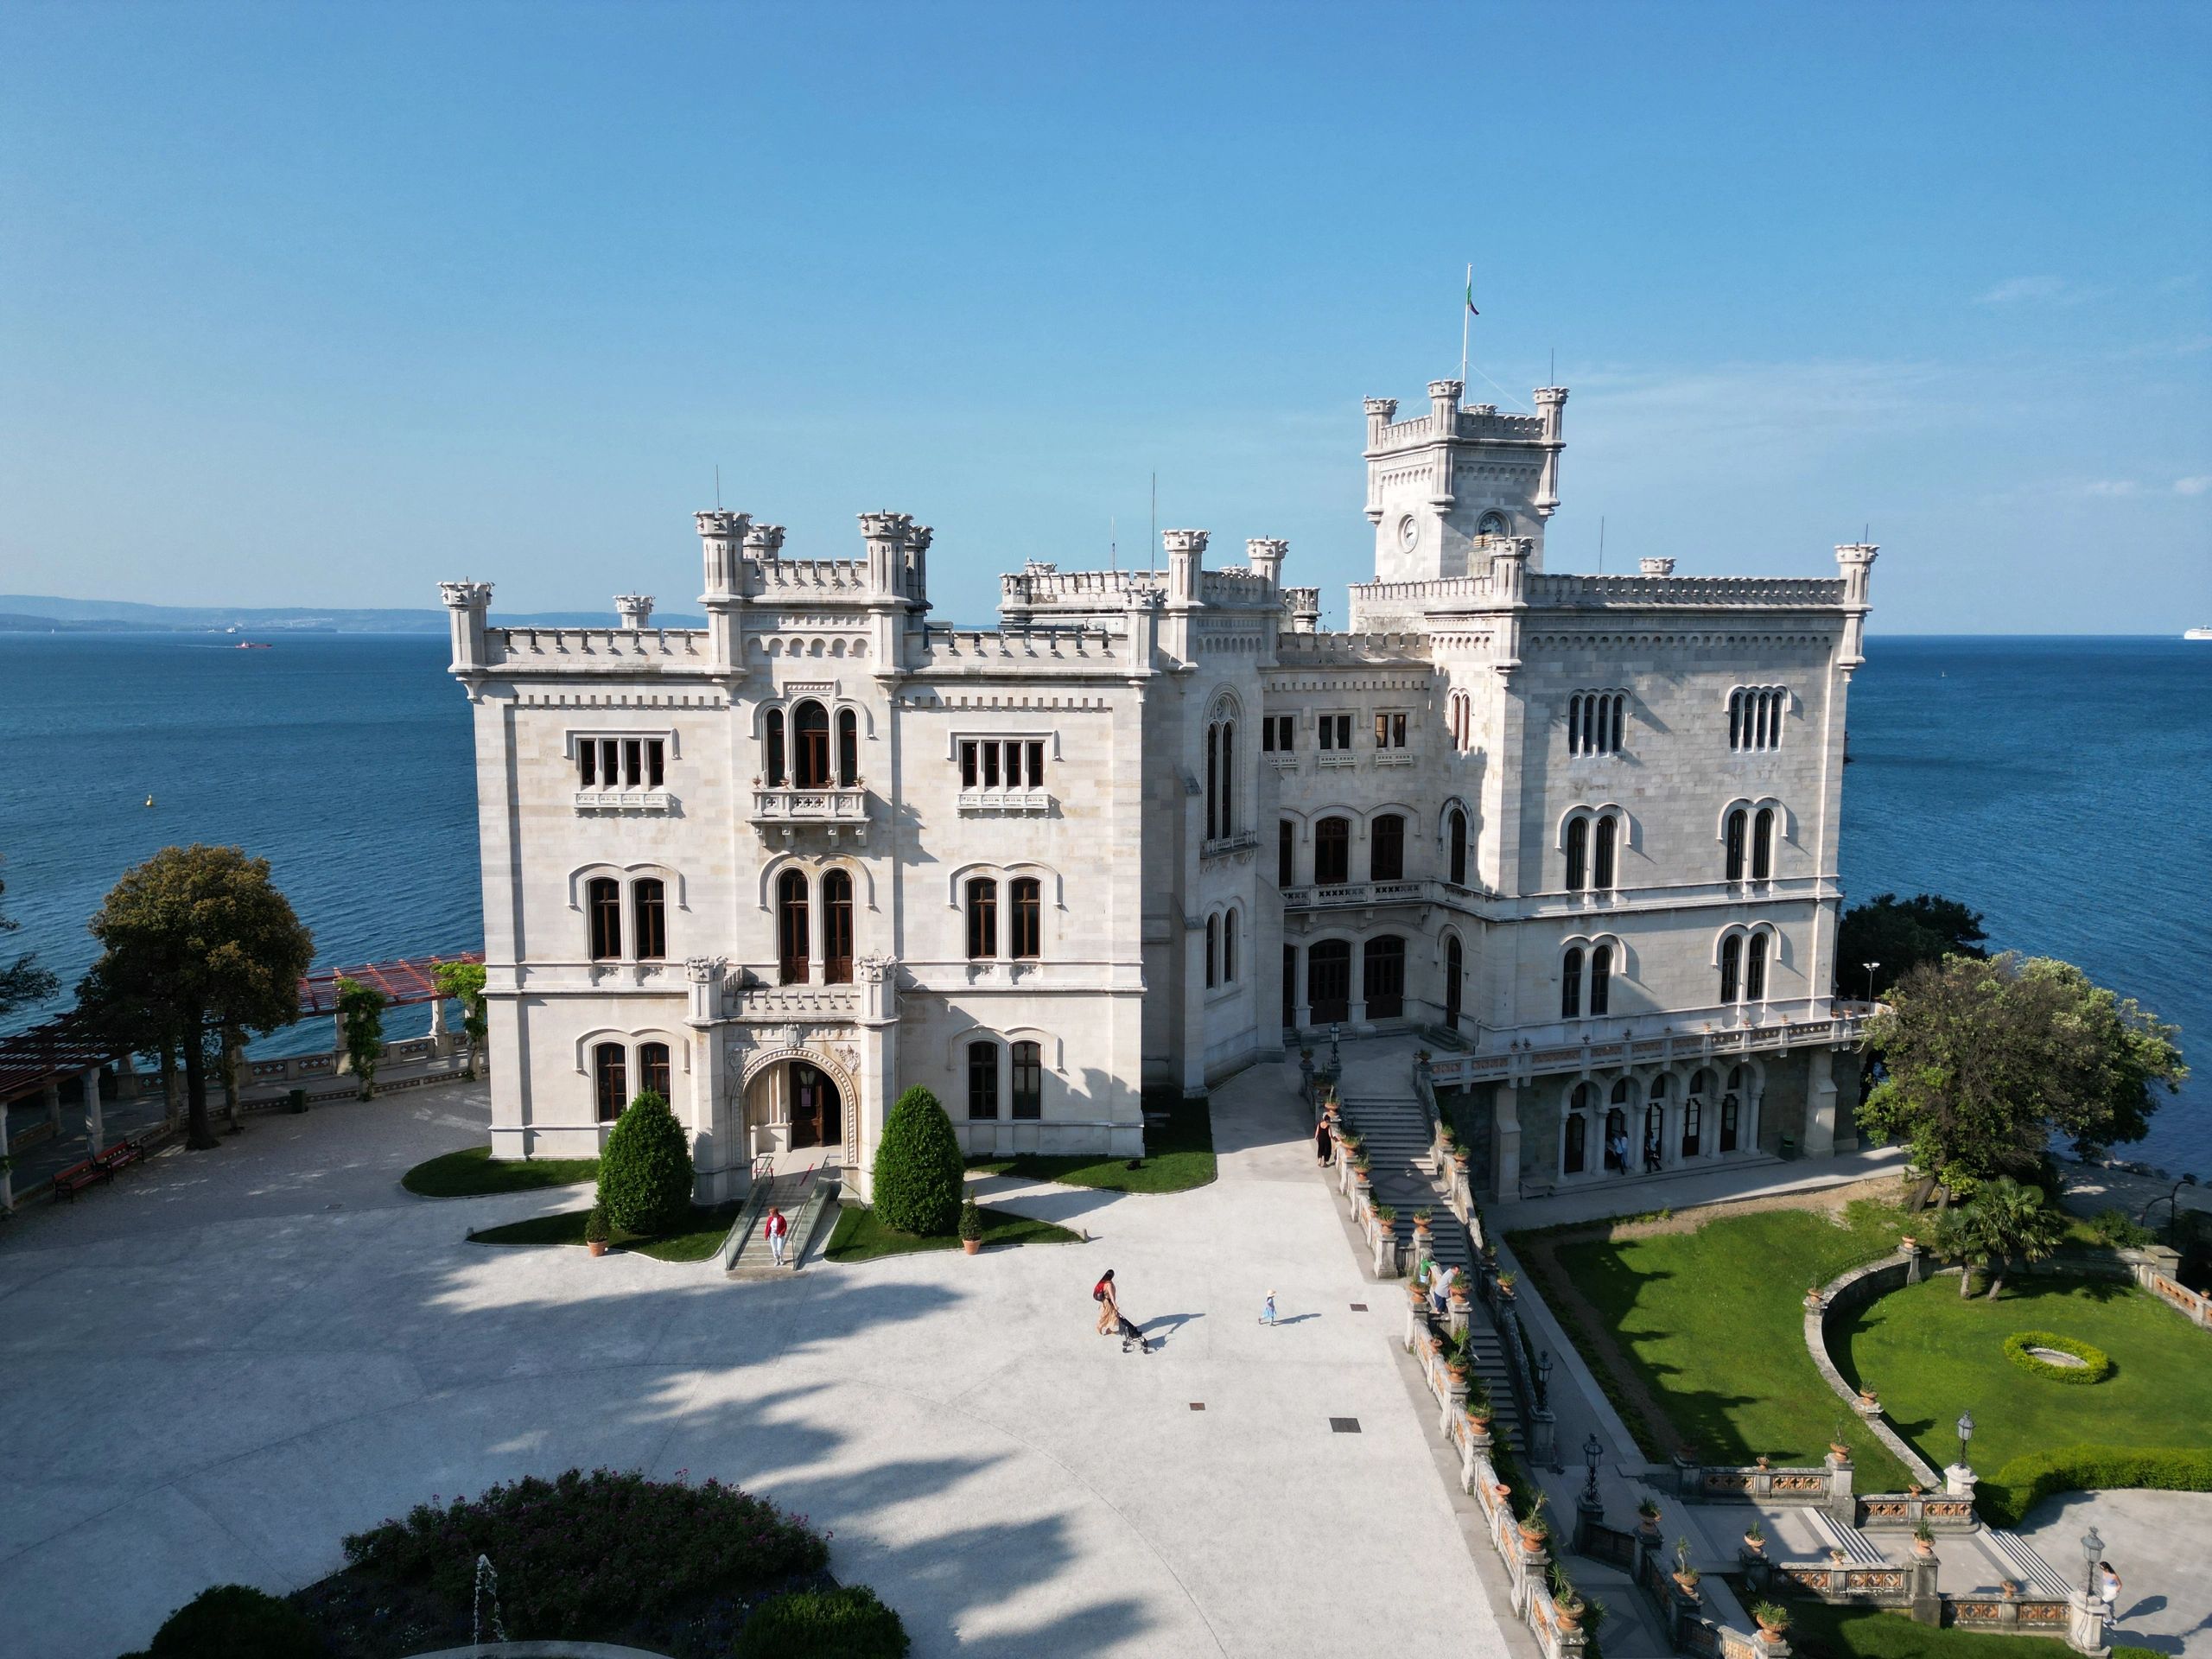 Ripresa aerea del Castello di Miramare a Trieste regione Friuli Venezia Giulia Italia